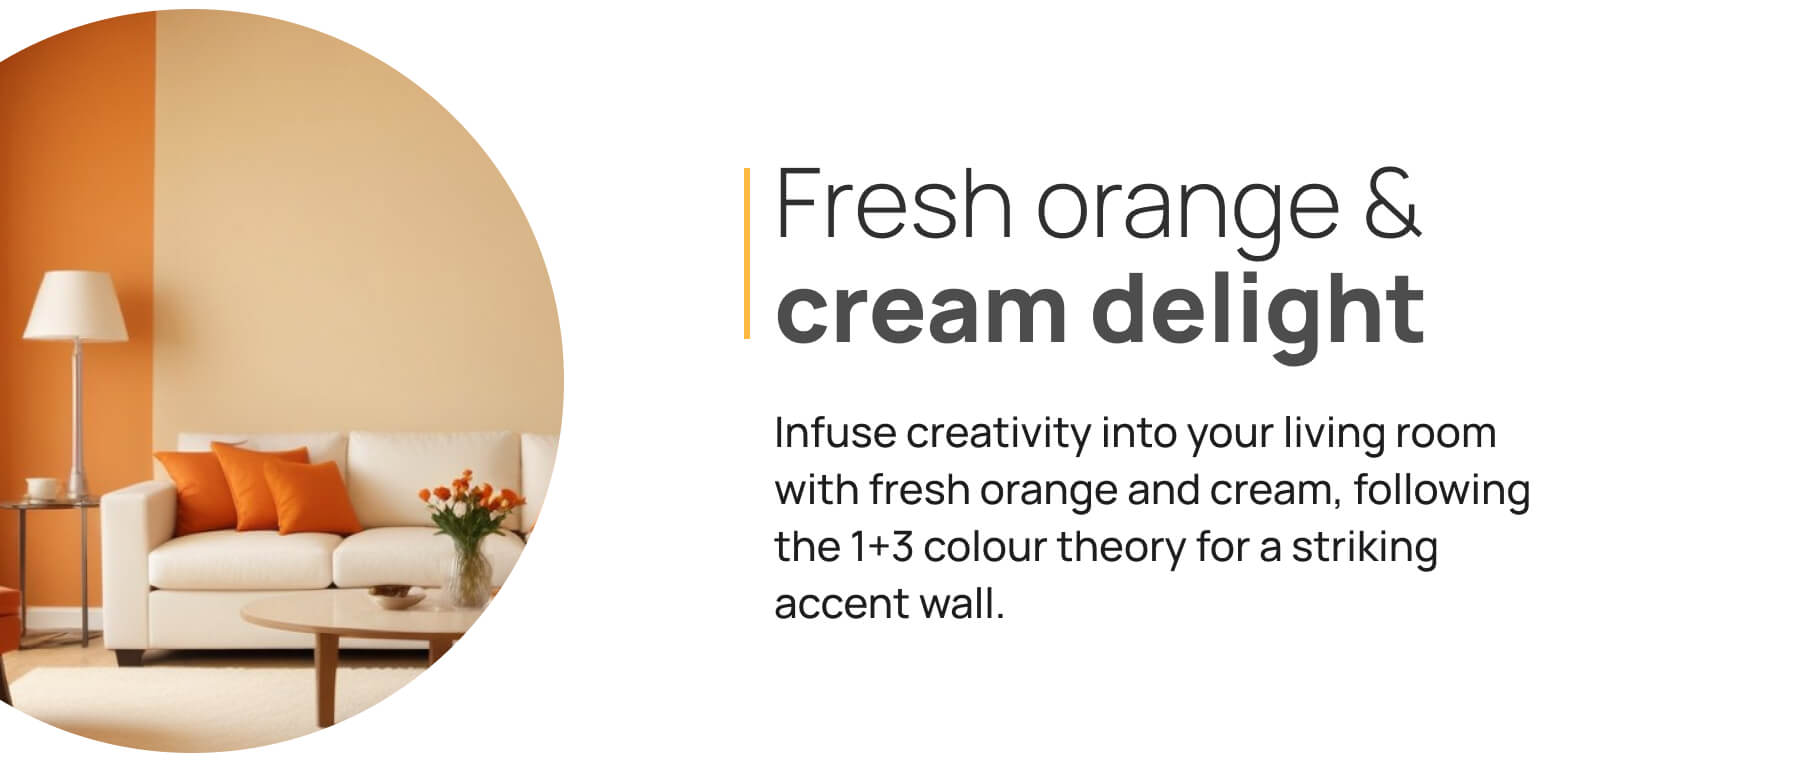 Fresh orange & cream delight